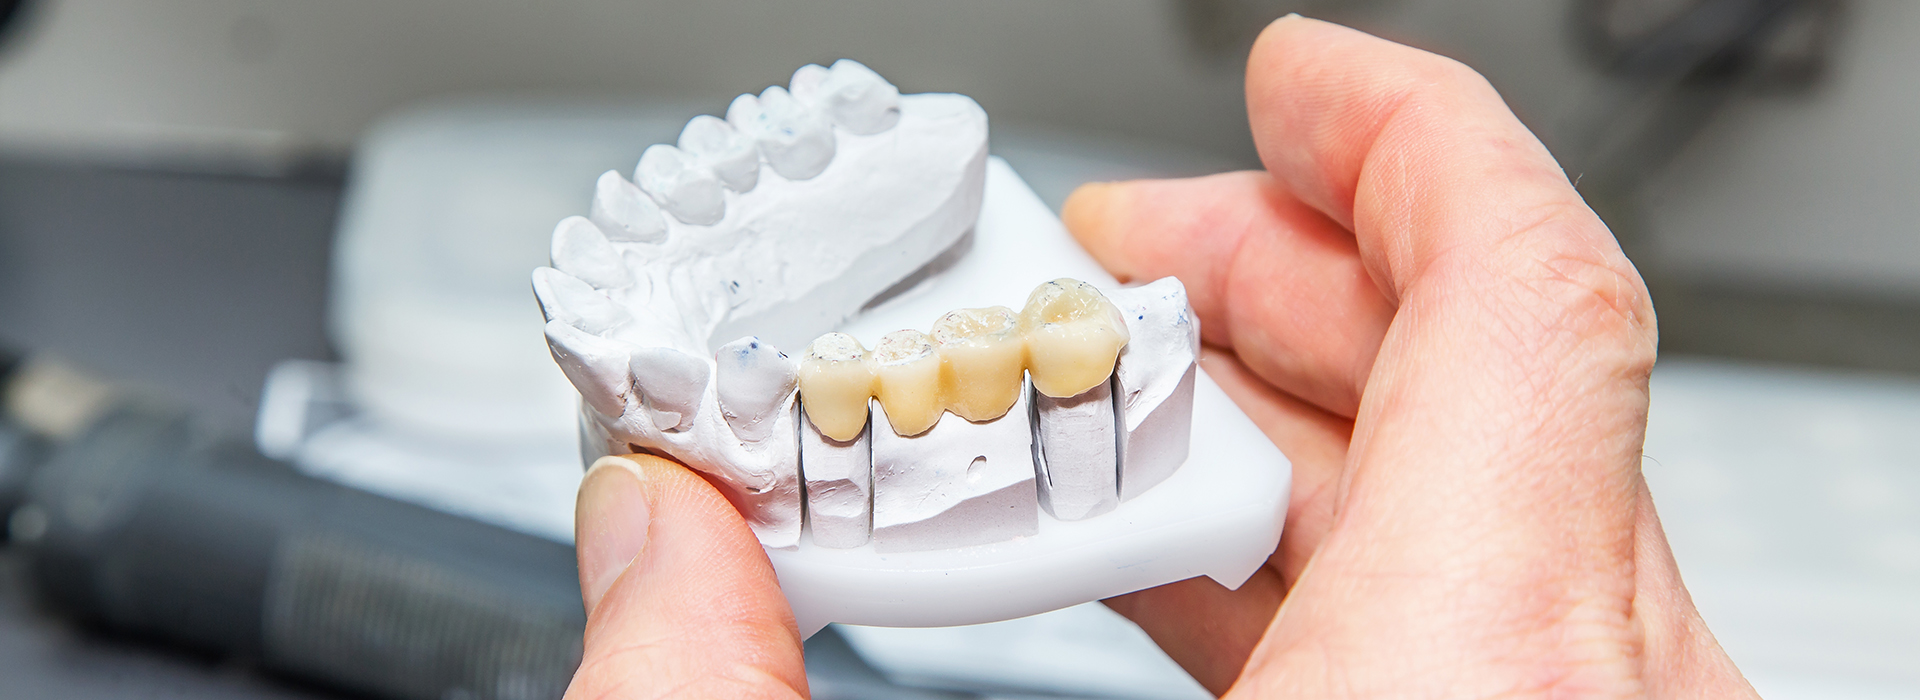 Lodi Family Dentistry | 4-Implant Smile, Oral Exams and Sleep Apnea